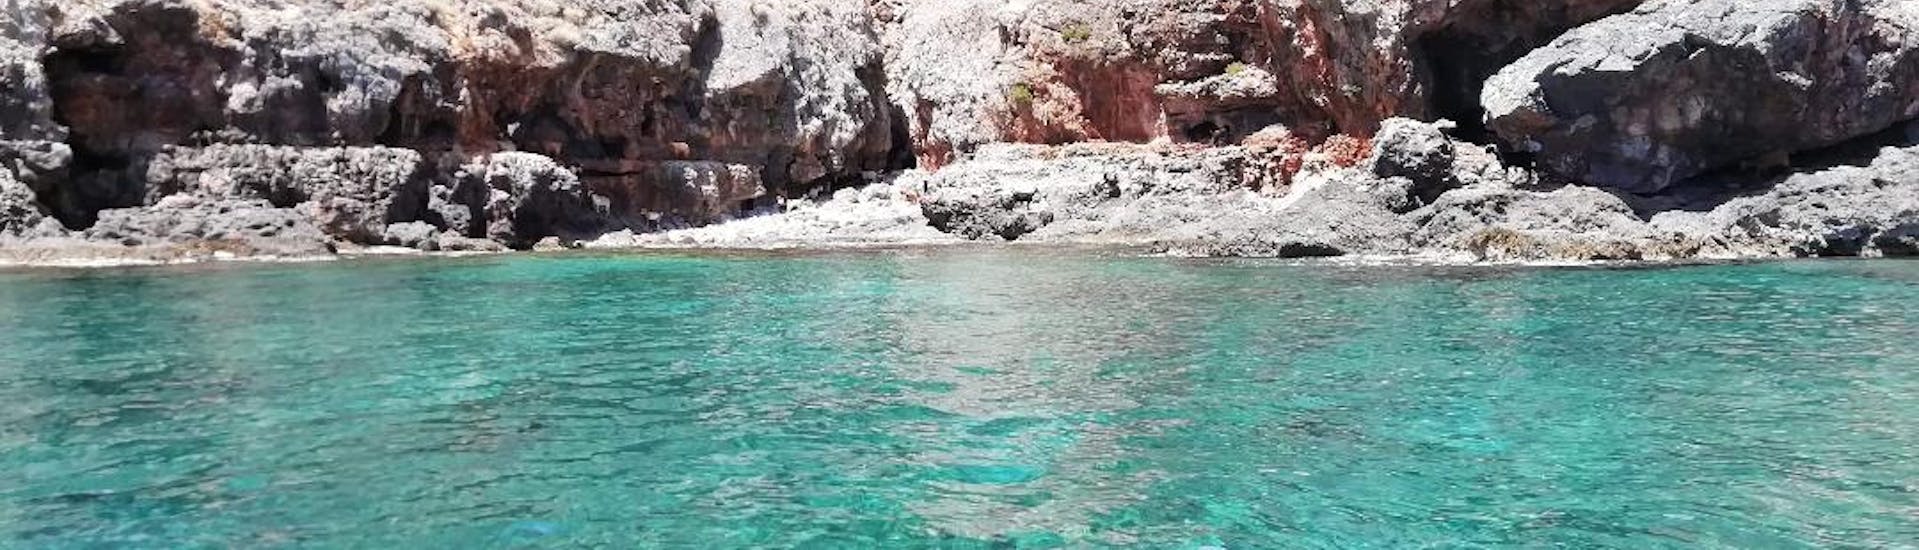 La costa rocciosa di Antikythira che potrete ammirare durante la gita privata in barca alla laguna di Balos e Antikythira con Chania Balos Cruises.